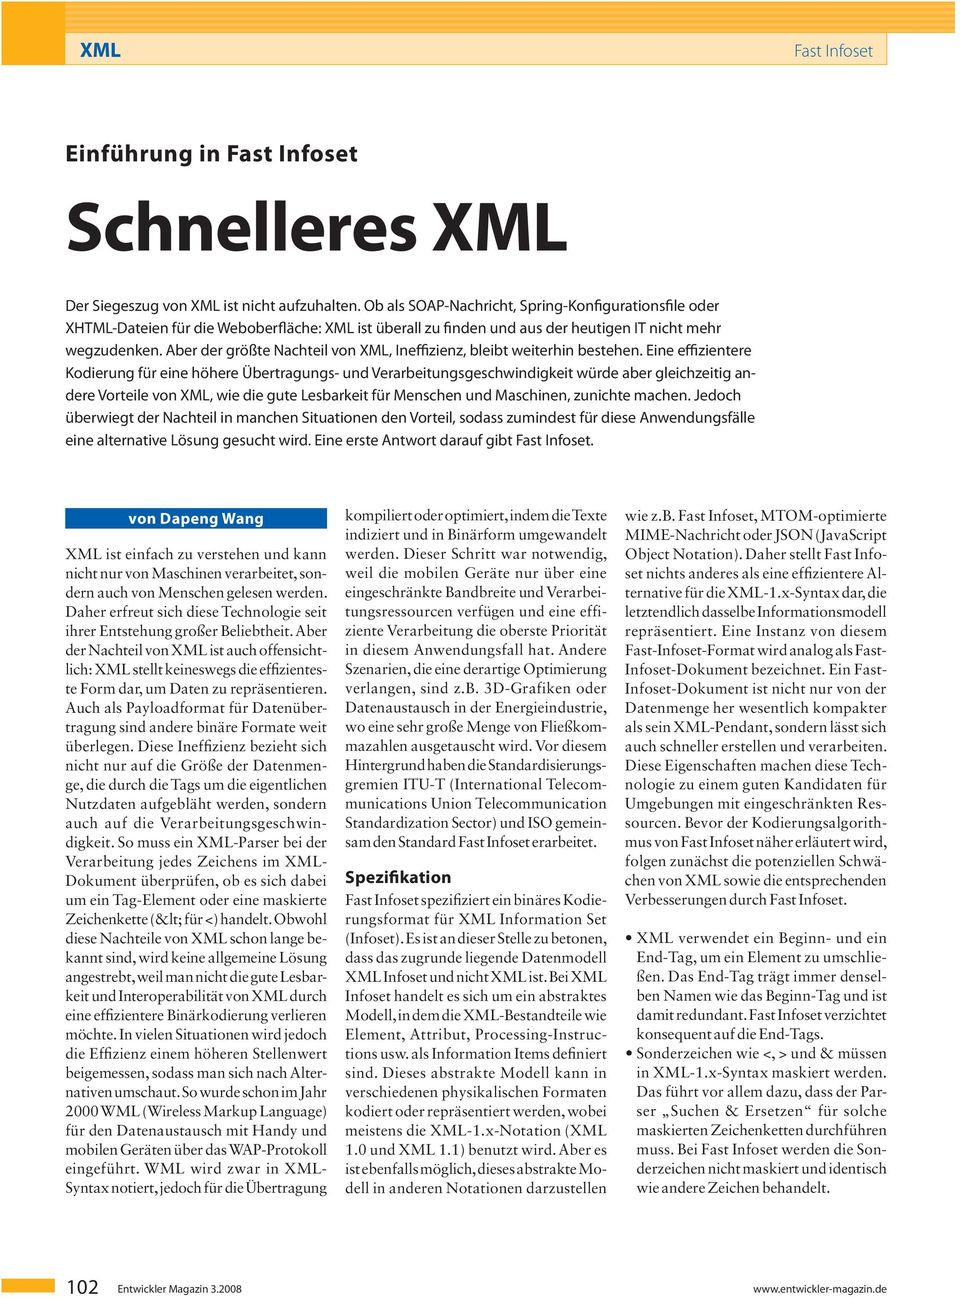 Aber der größte Nachteil von XML, Ineffizienz, bleibt weiterhin bestehen.